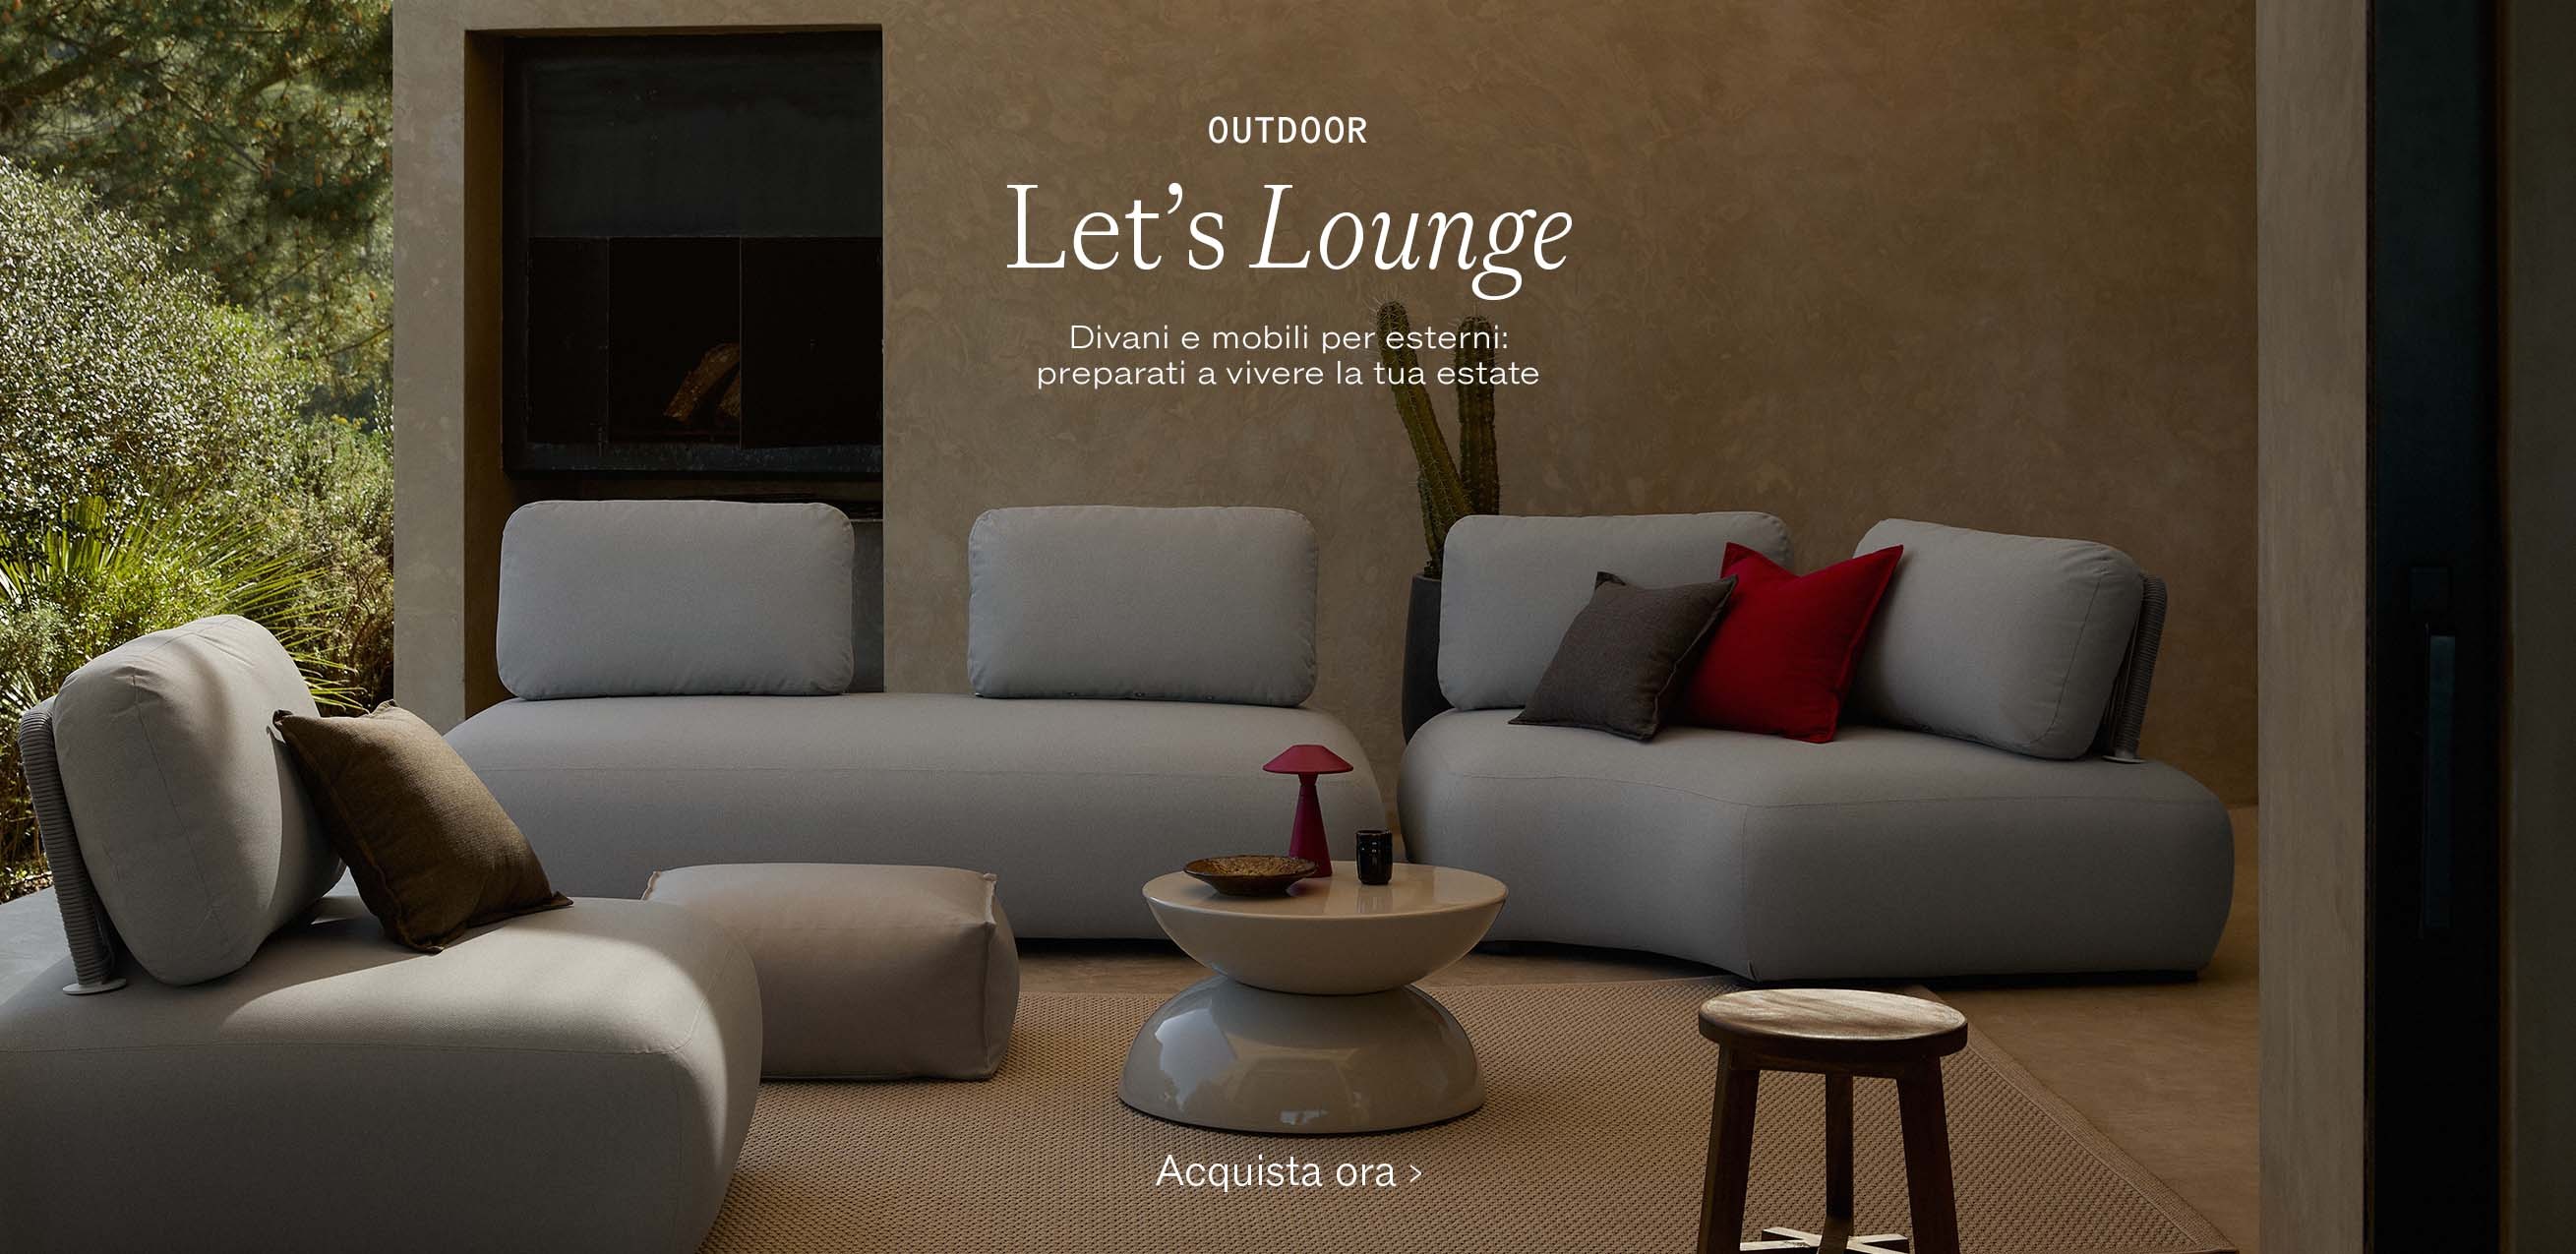 Outdoor Let’s Lounge! Divani e mobili per esterni: preparati a vivere la tua estate